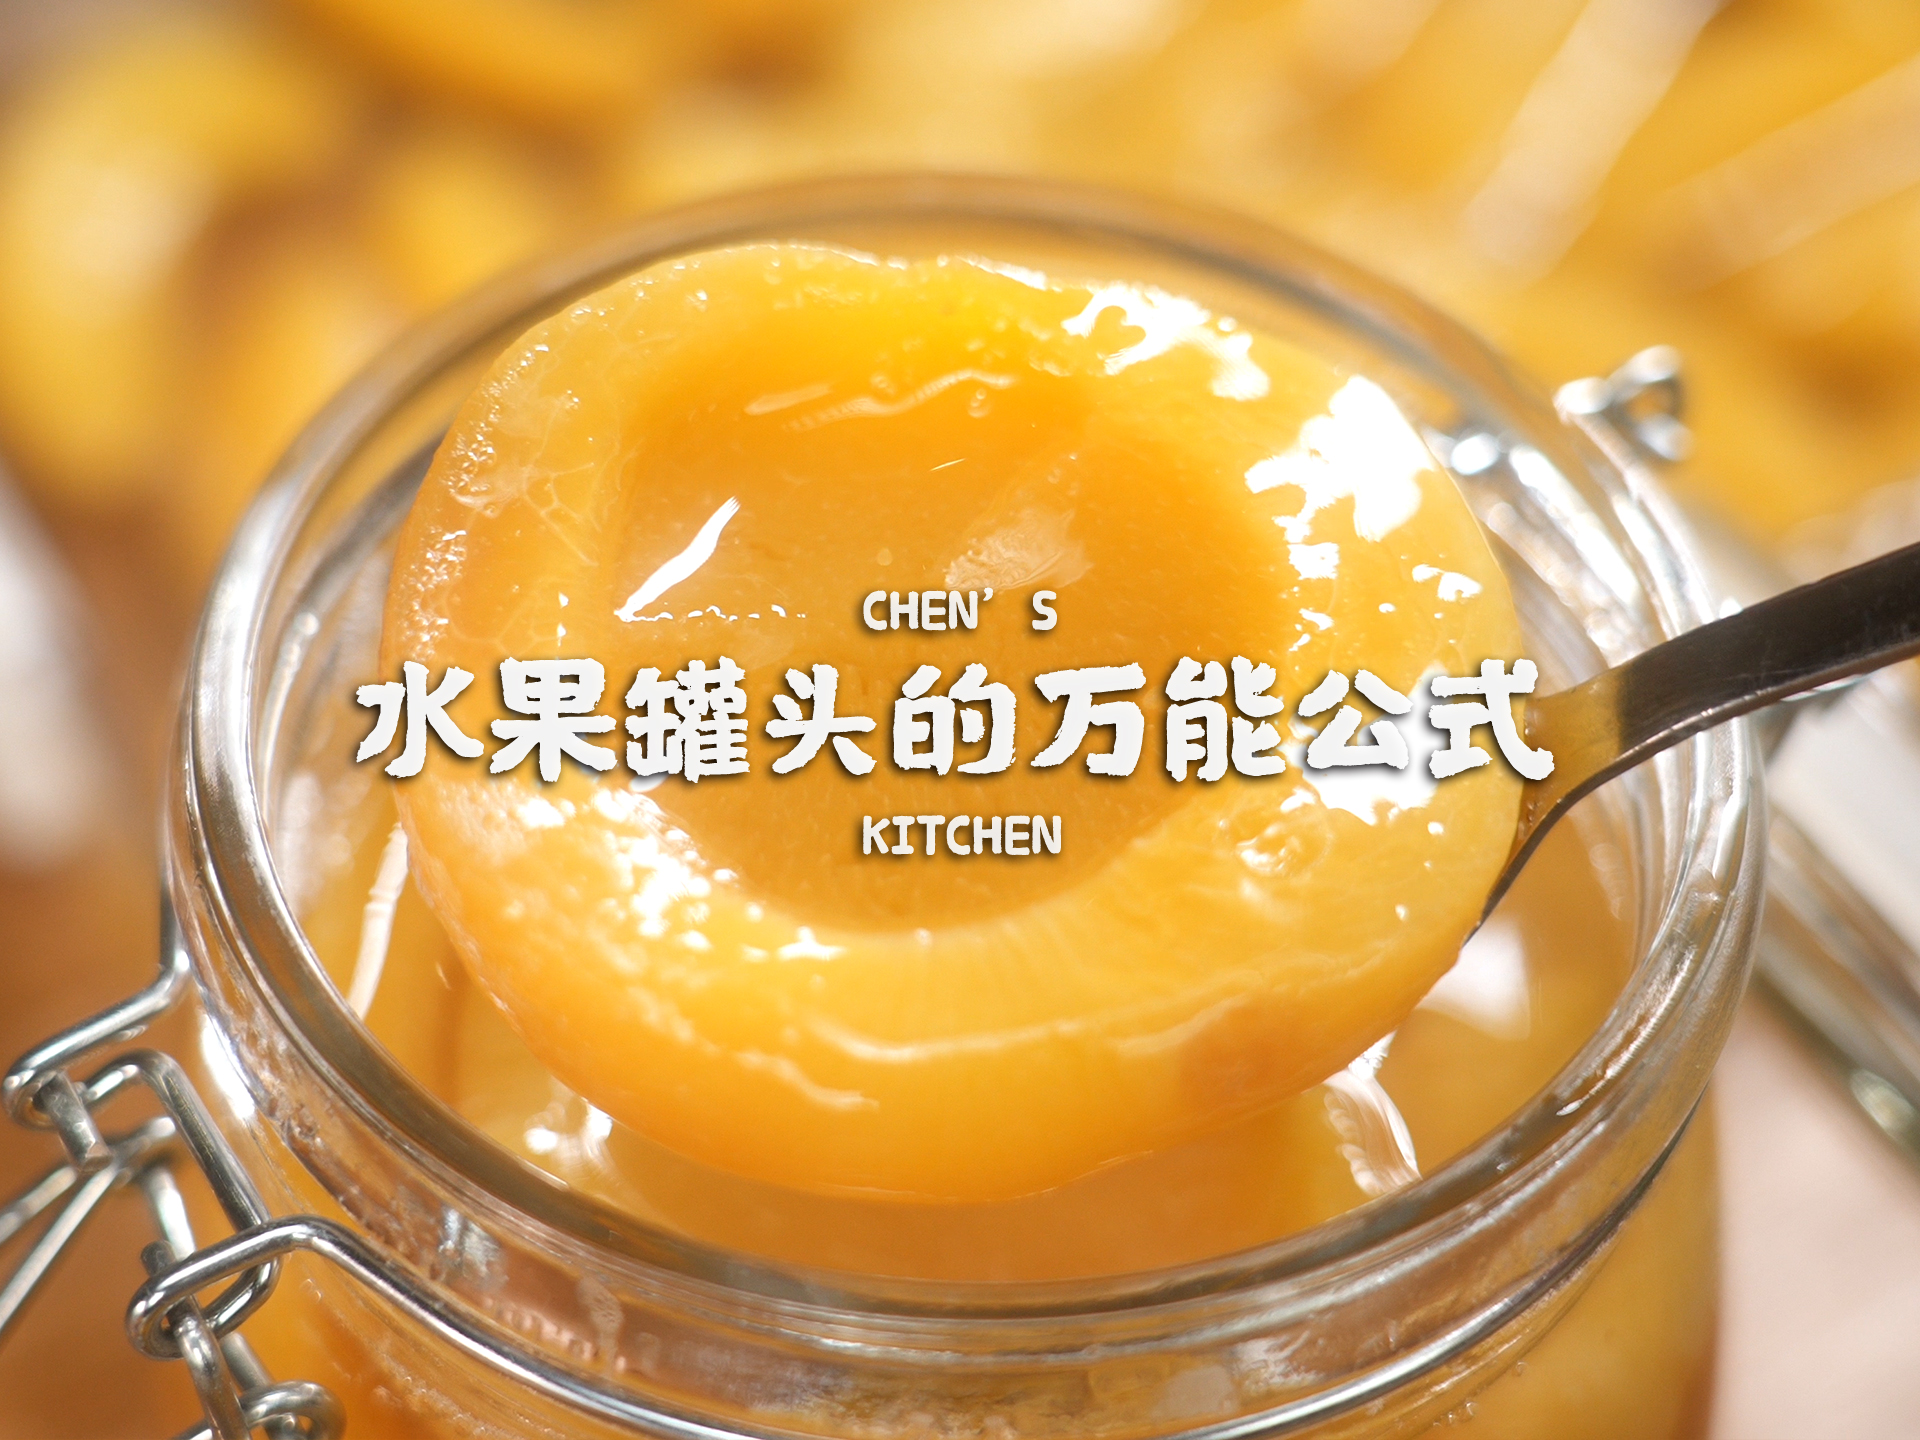 吃不完的水果这样做！自制黄桃罐头+橘子罐头的万能公式！